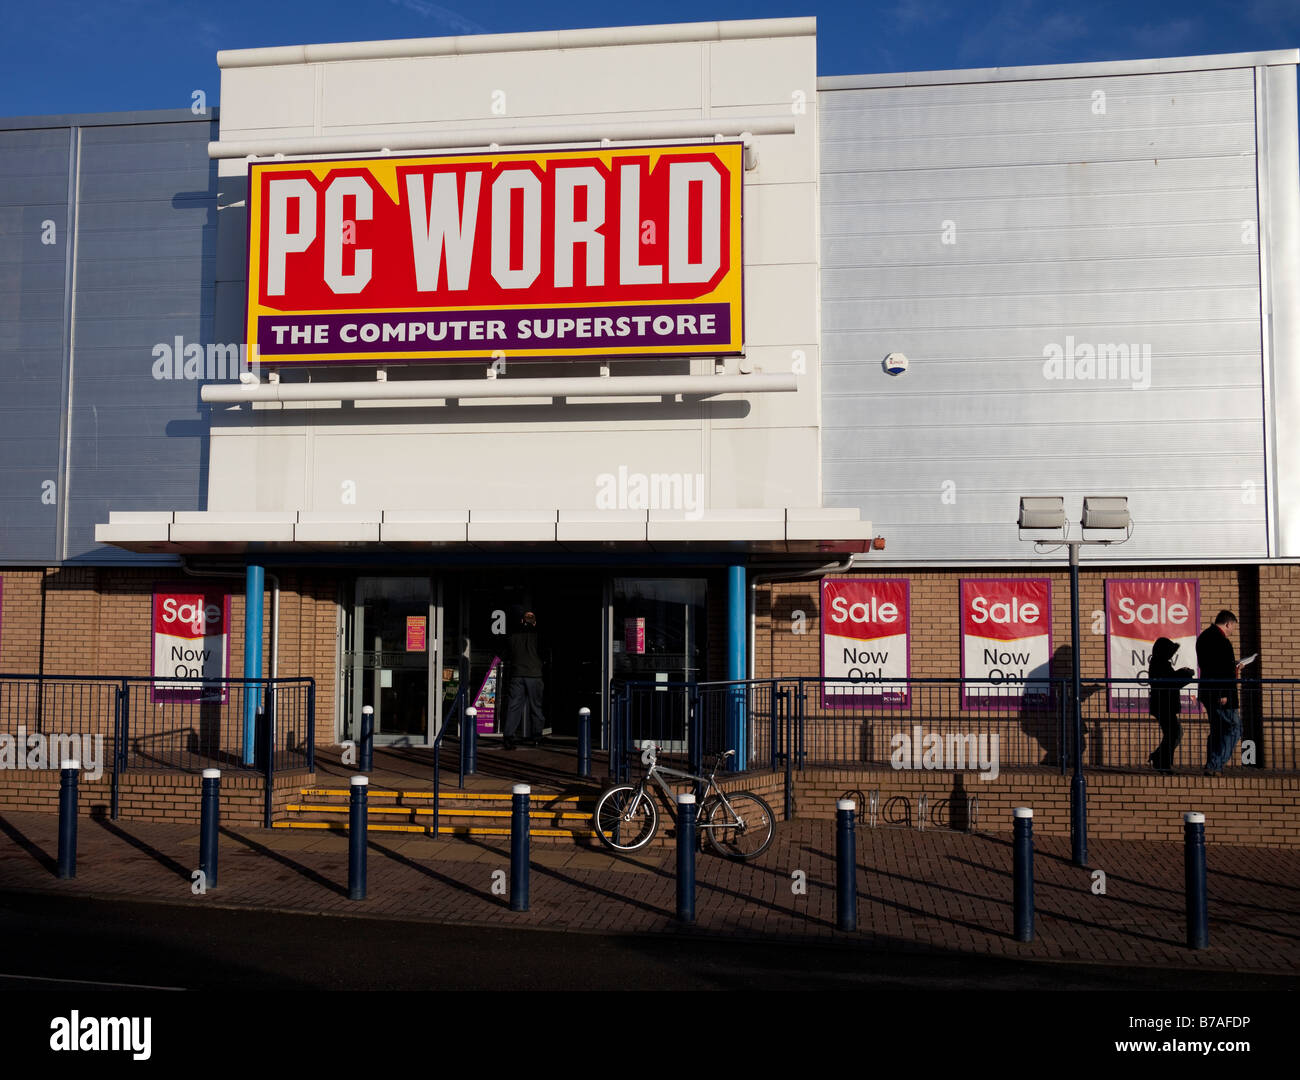 Façade entrée de PC World store, Édimbourg, Écosse, Royaume-Uni, Europe Banque D'Images